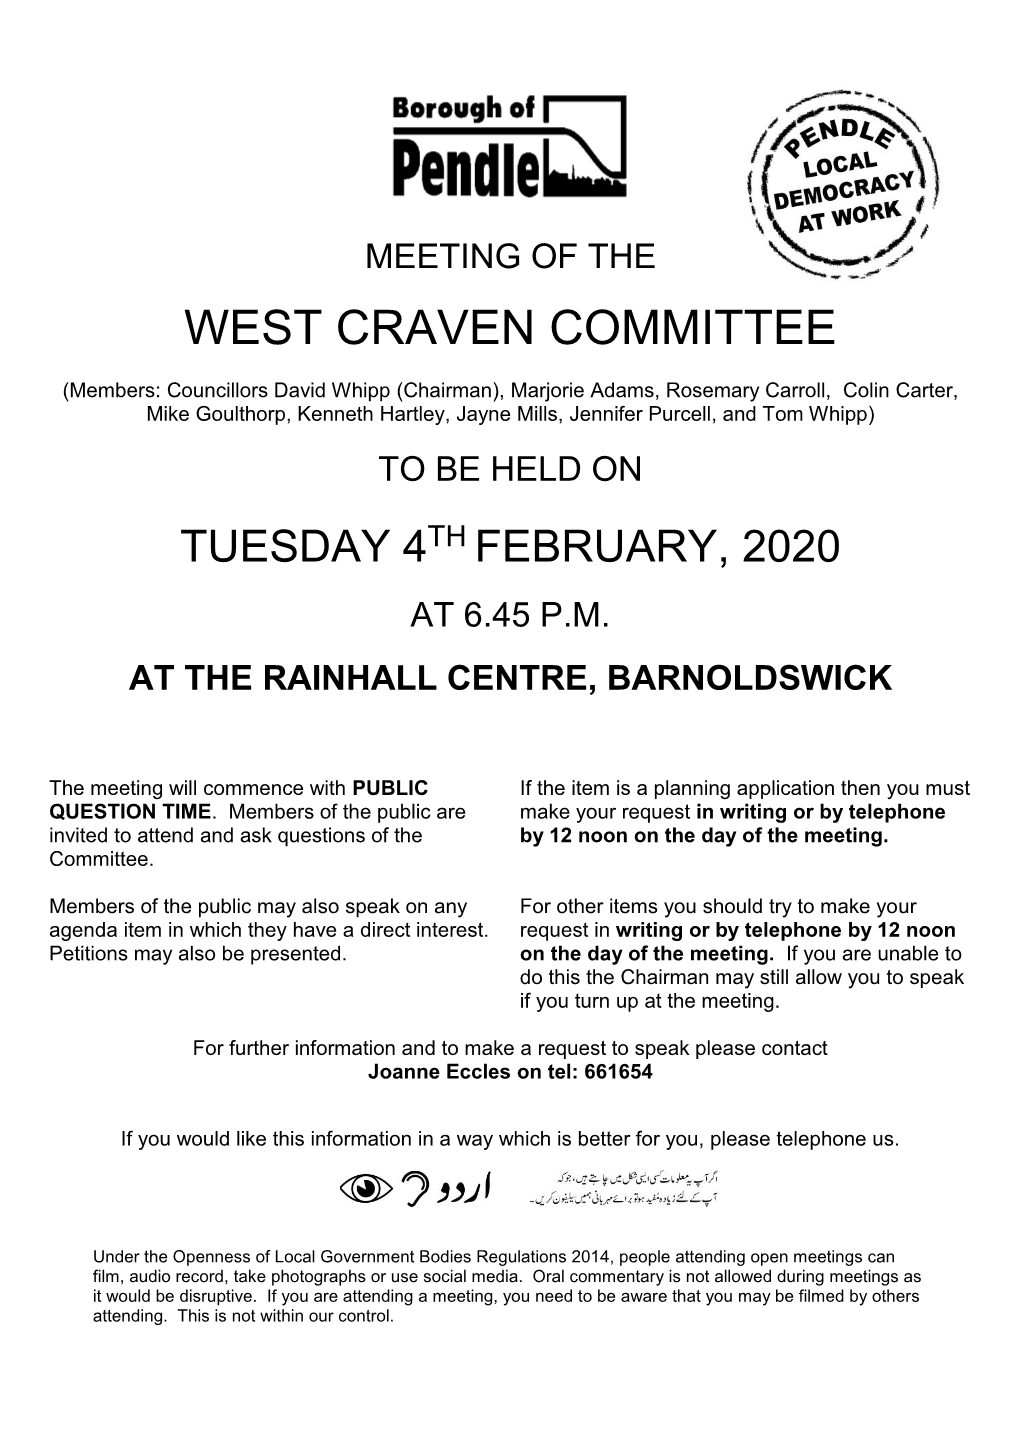 West Craven Committee